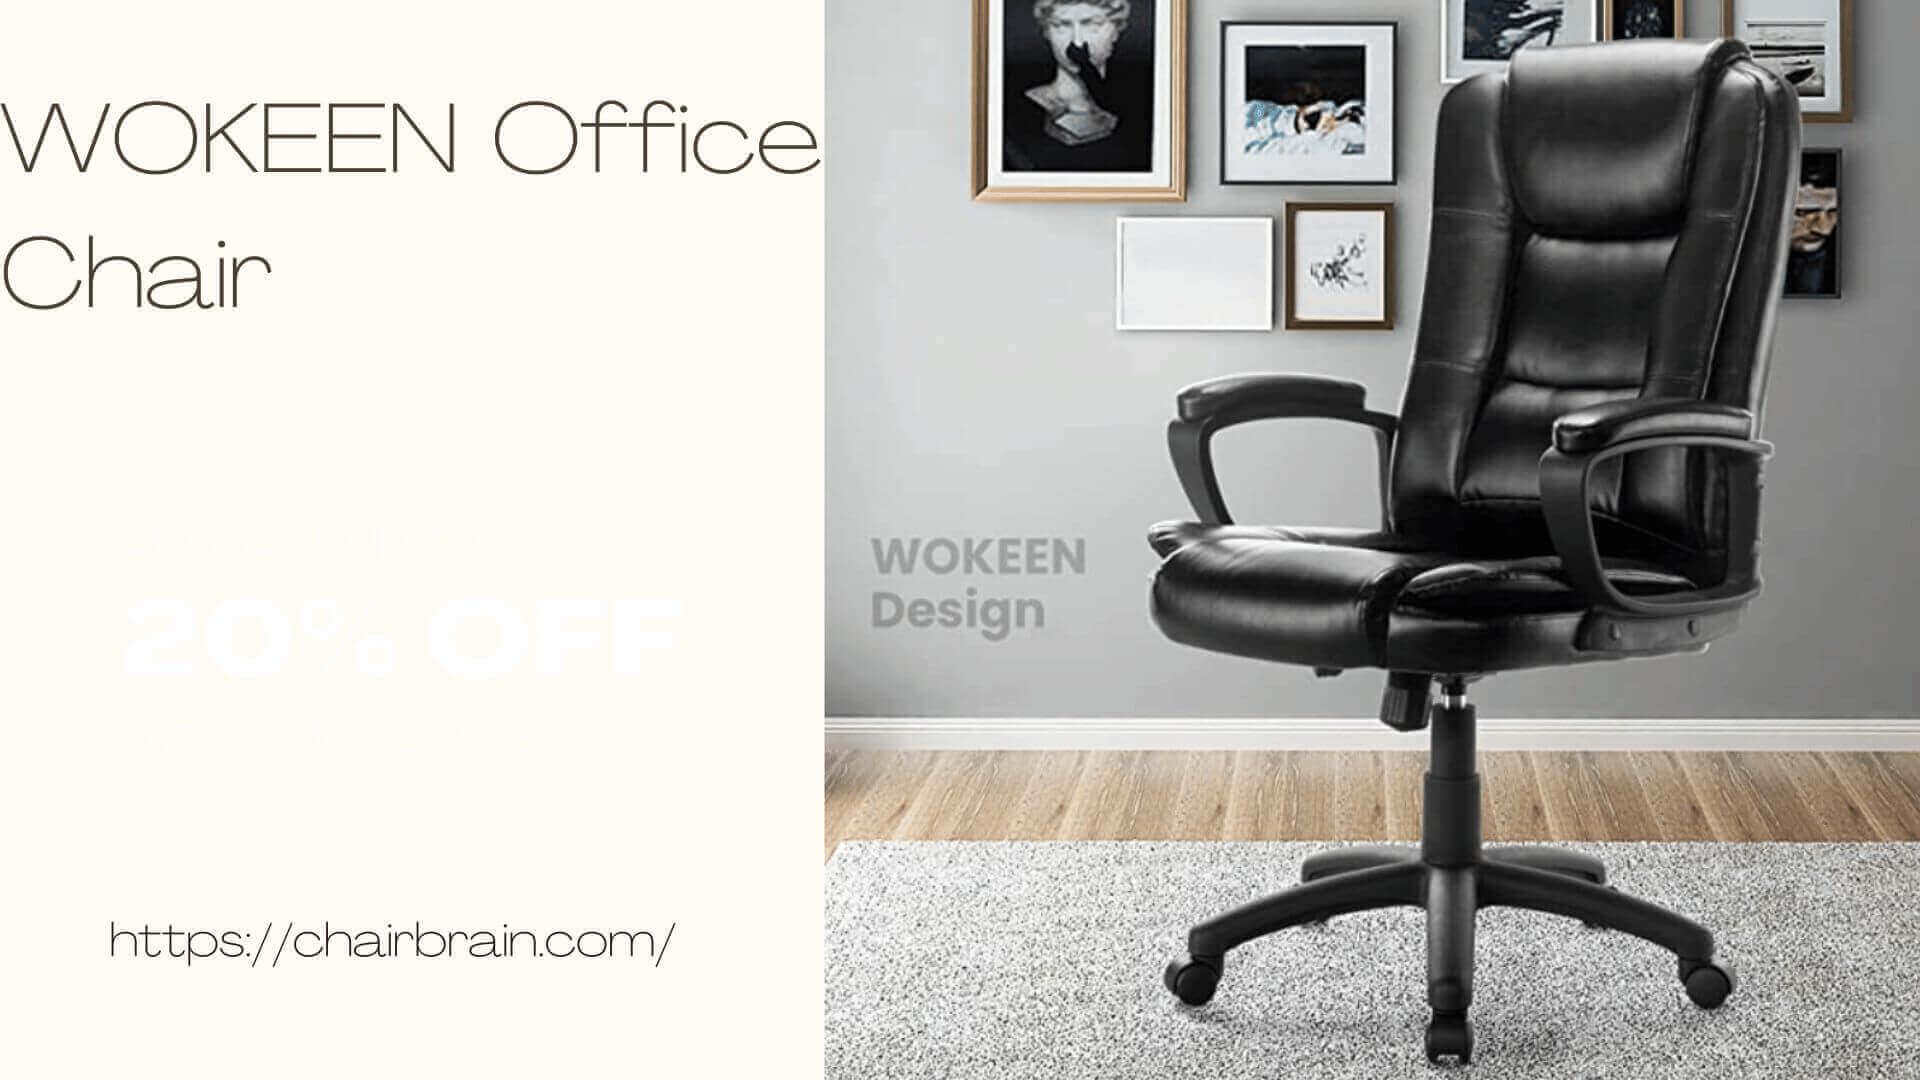 WOKEEN Office Chair